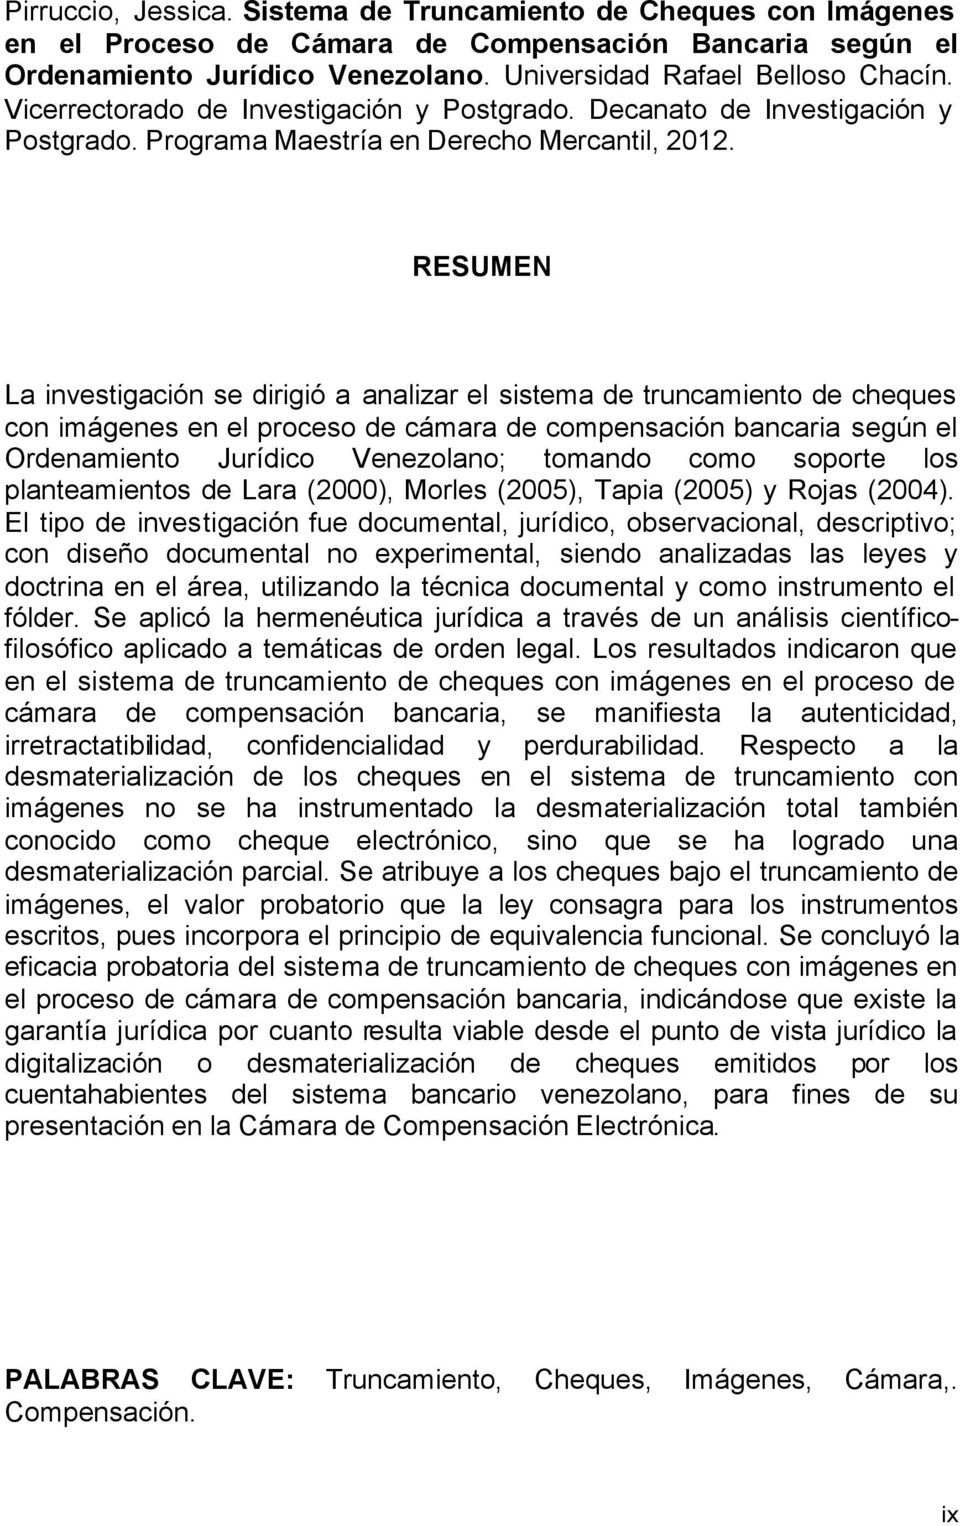 RESUMEN La investigación se dirigió a analizar el sistema de truncamiento de cheques con imágenes en el proceso de cámara de compensación bancaria según el Ordenamiento Jurídico Venezolano; tomando